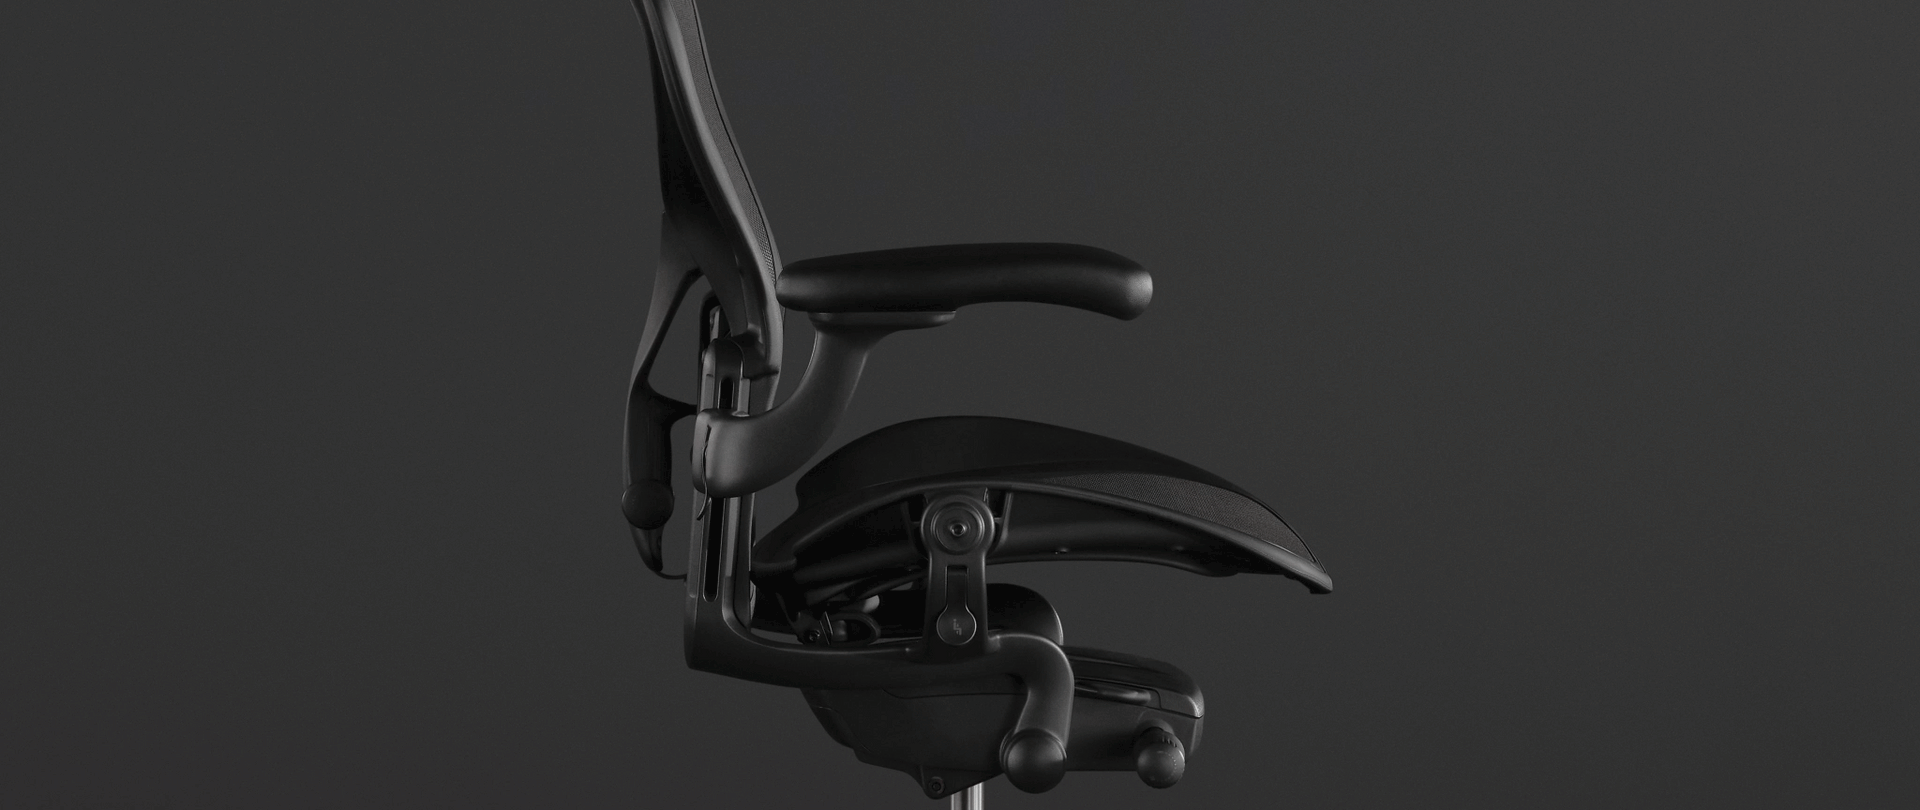 ブラックのアーロンチェアの写真上に描いたアニメーションで、アーロンチェアのPostureFit SLが脊椎をトータル的にサポートする様子を表現しています。